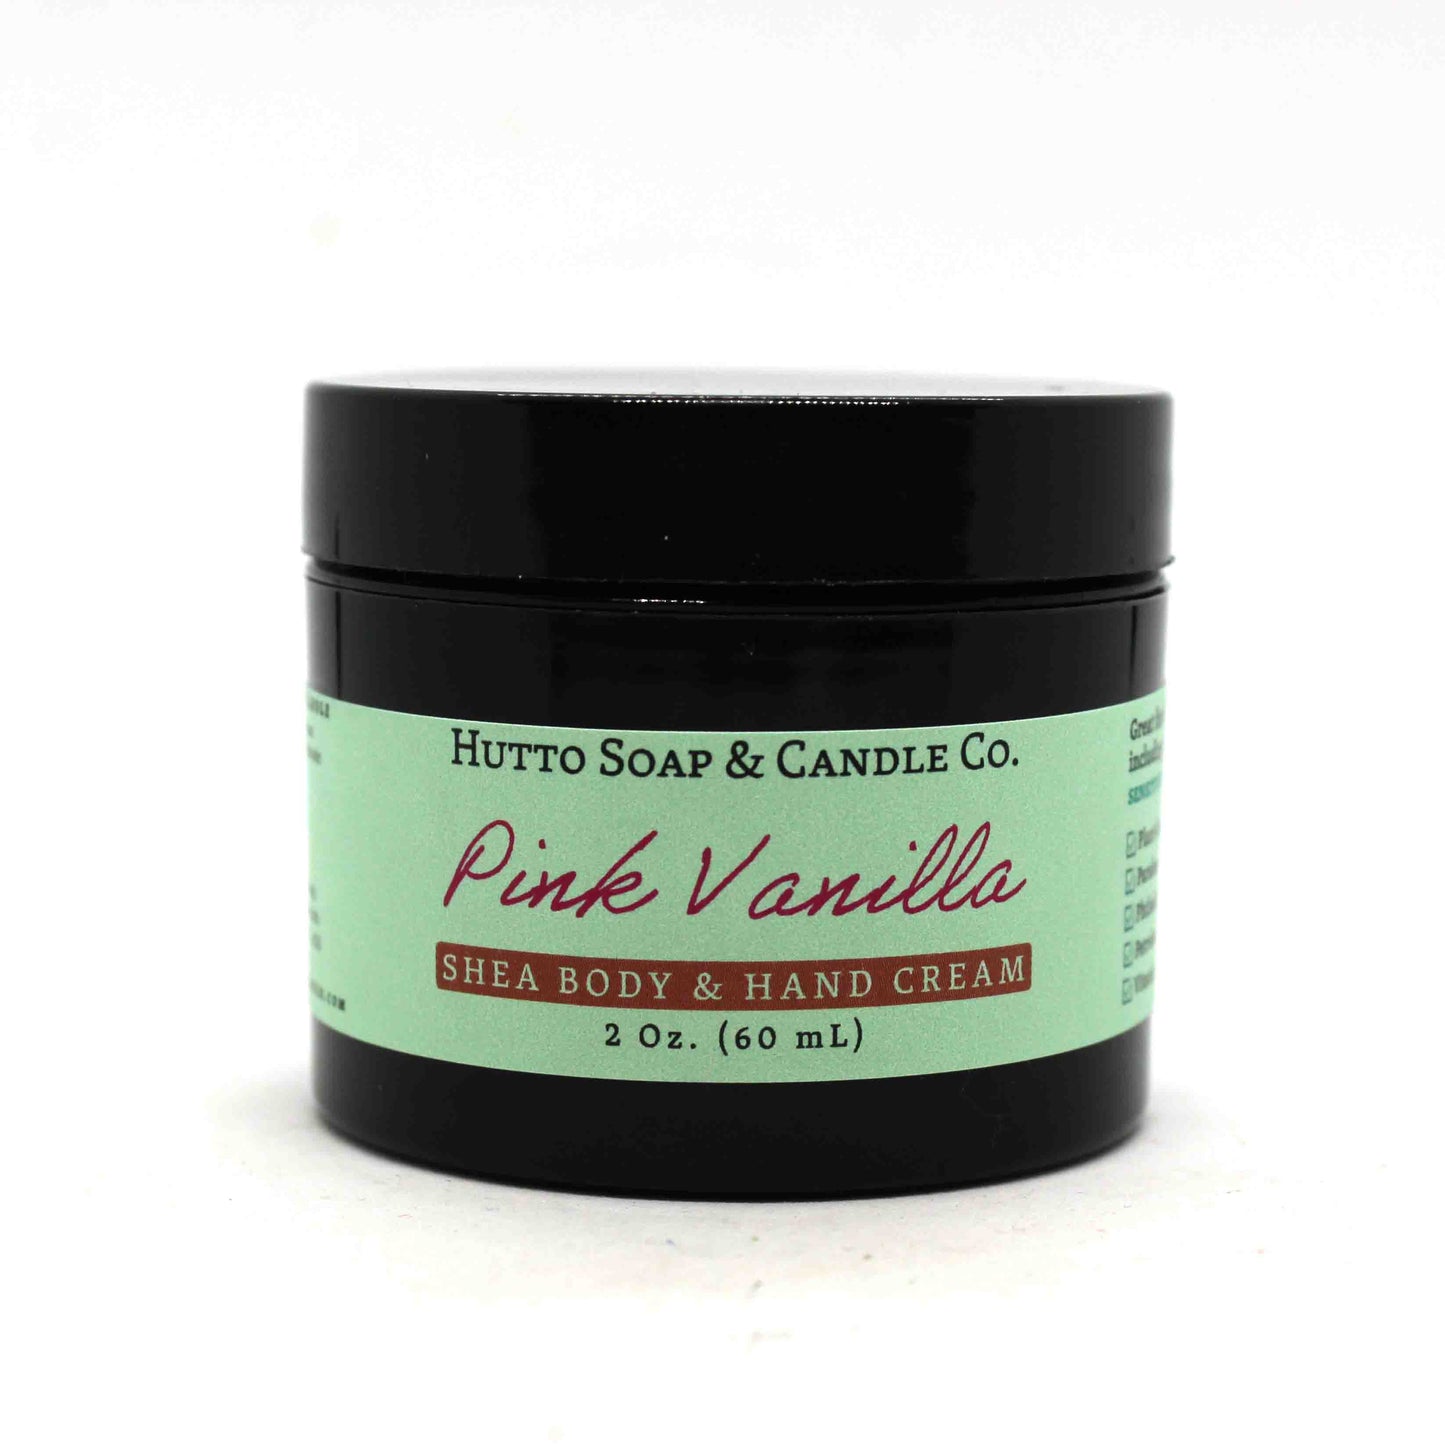 Pink Vanilla Shea Body & Hand Cream